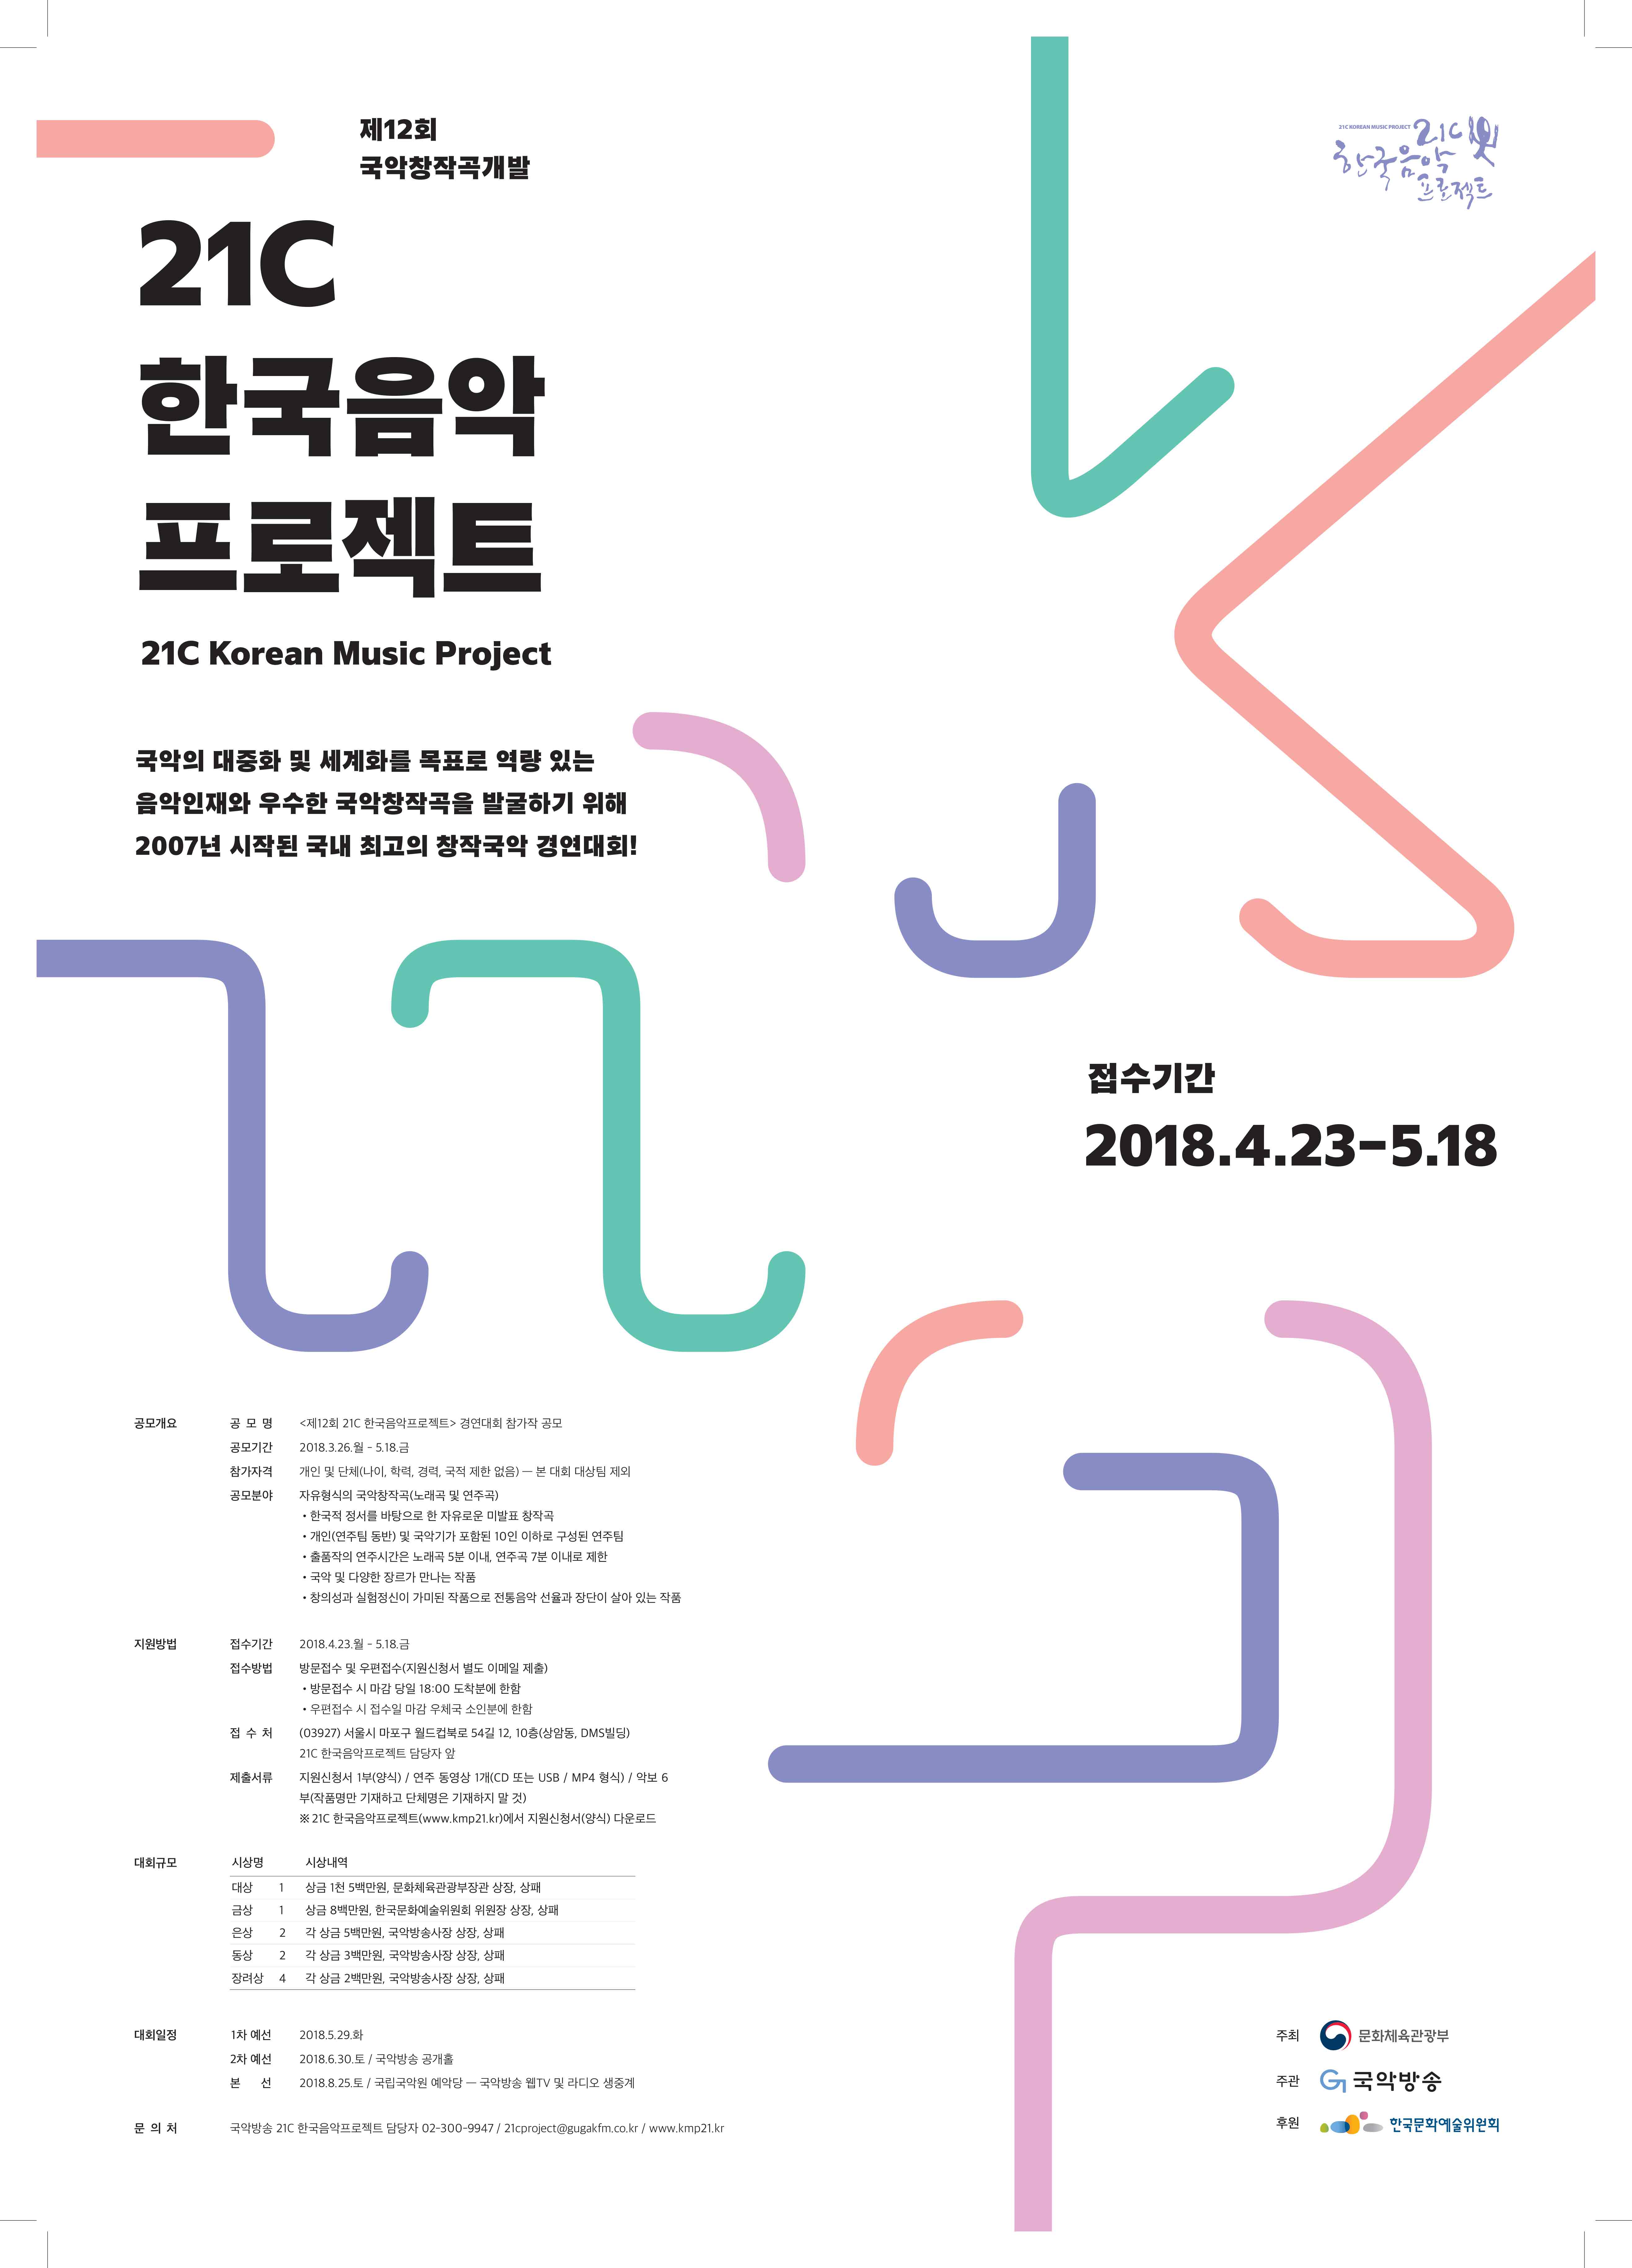 2018년도 21C 한국음악프로젝트 포스터